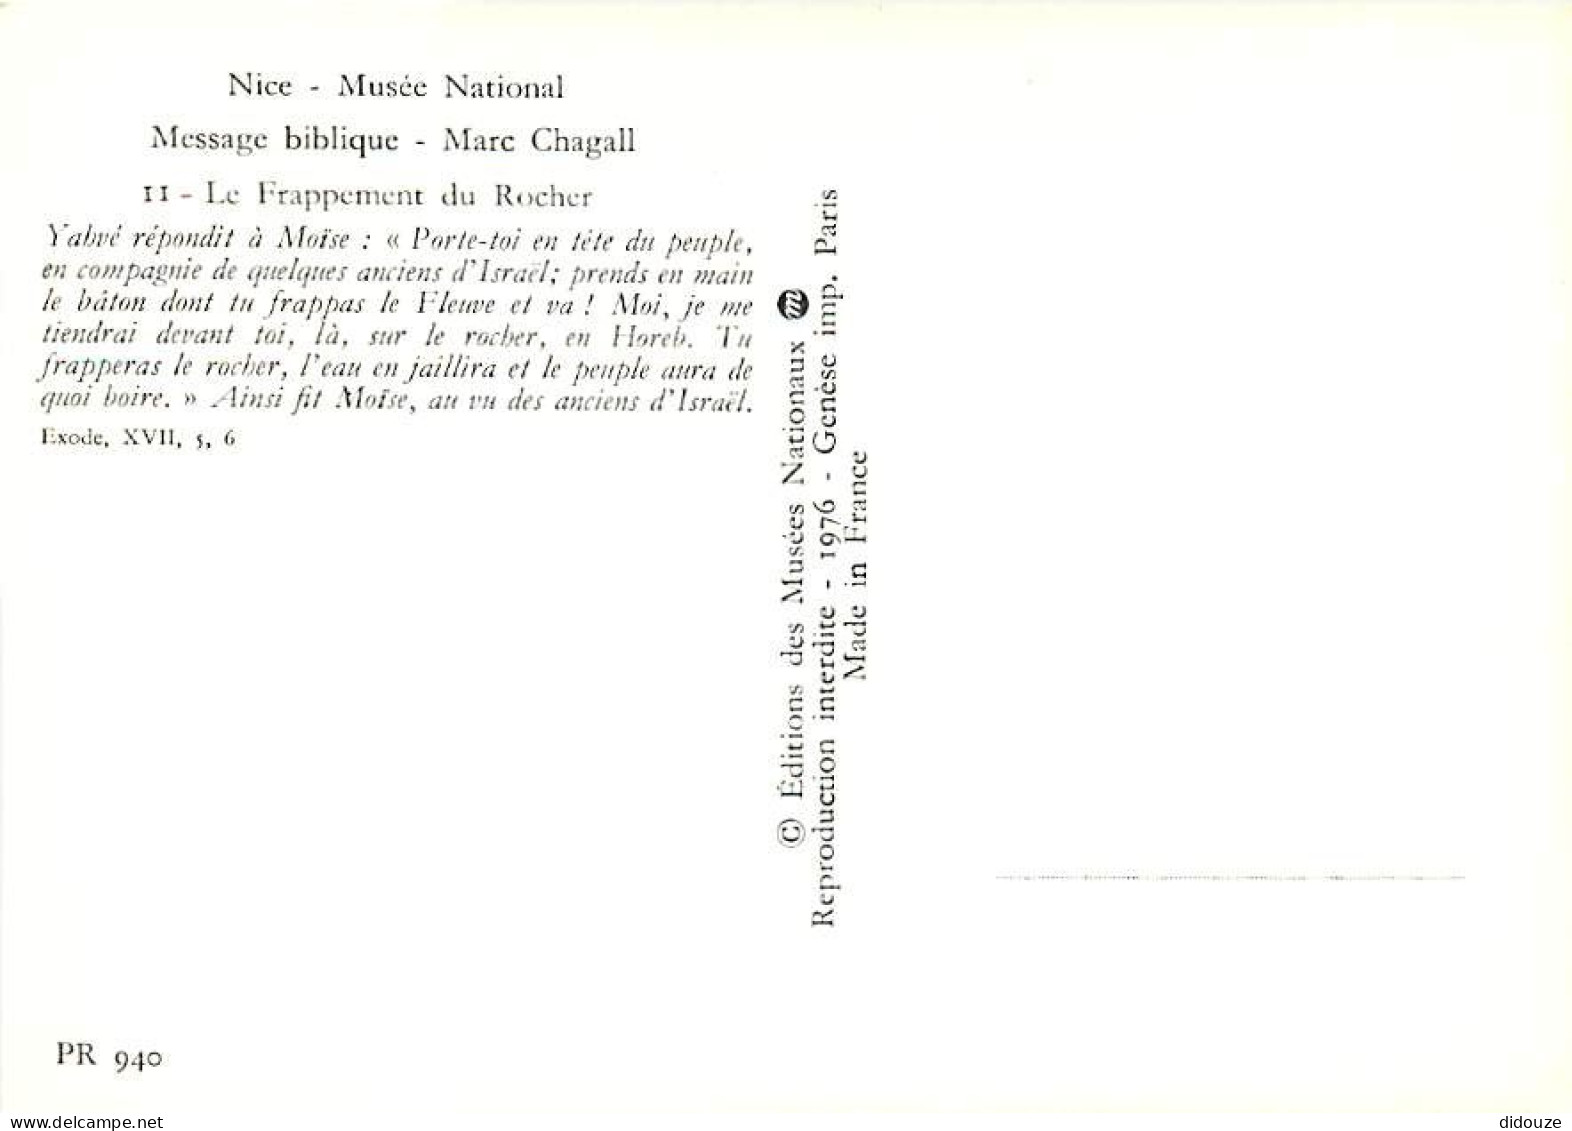 Art - Peinture Religieuse - Marc Chagall - Message Biblique - 11 - Le Frappement Du Rocher - Musée National De Nice - CP - Tableaux, Vitraux Et Statues